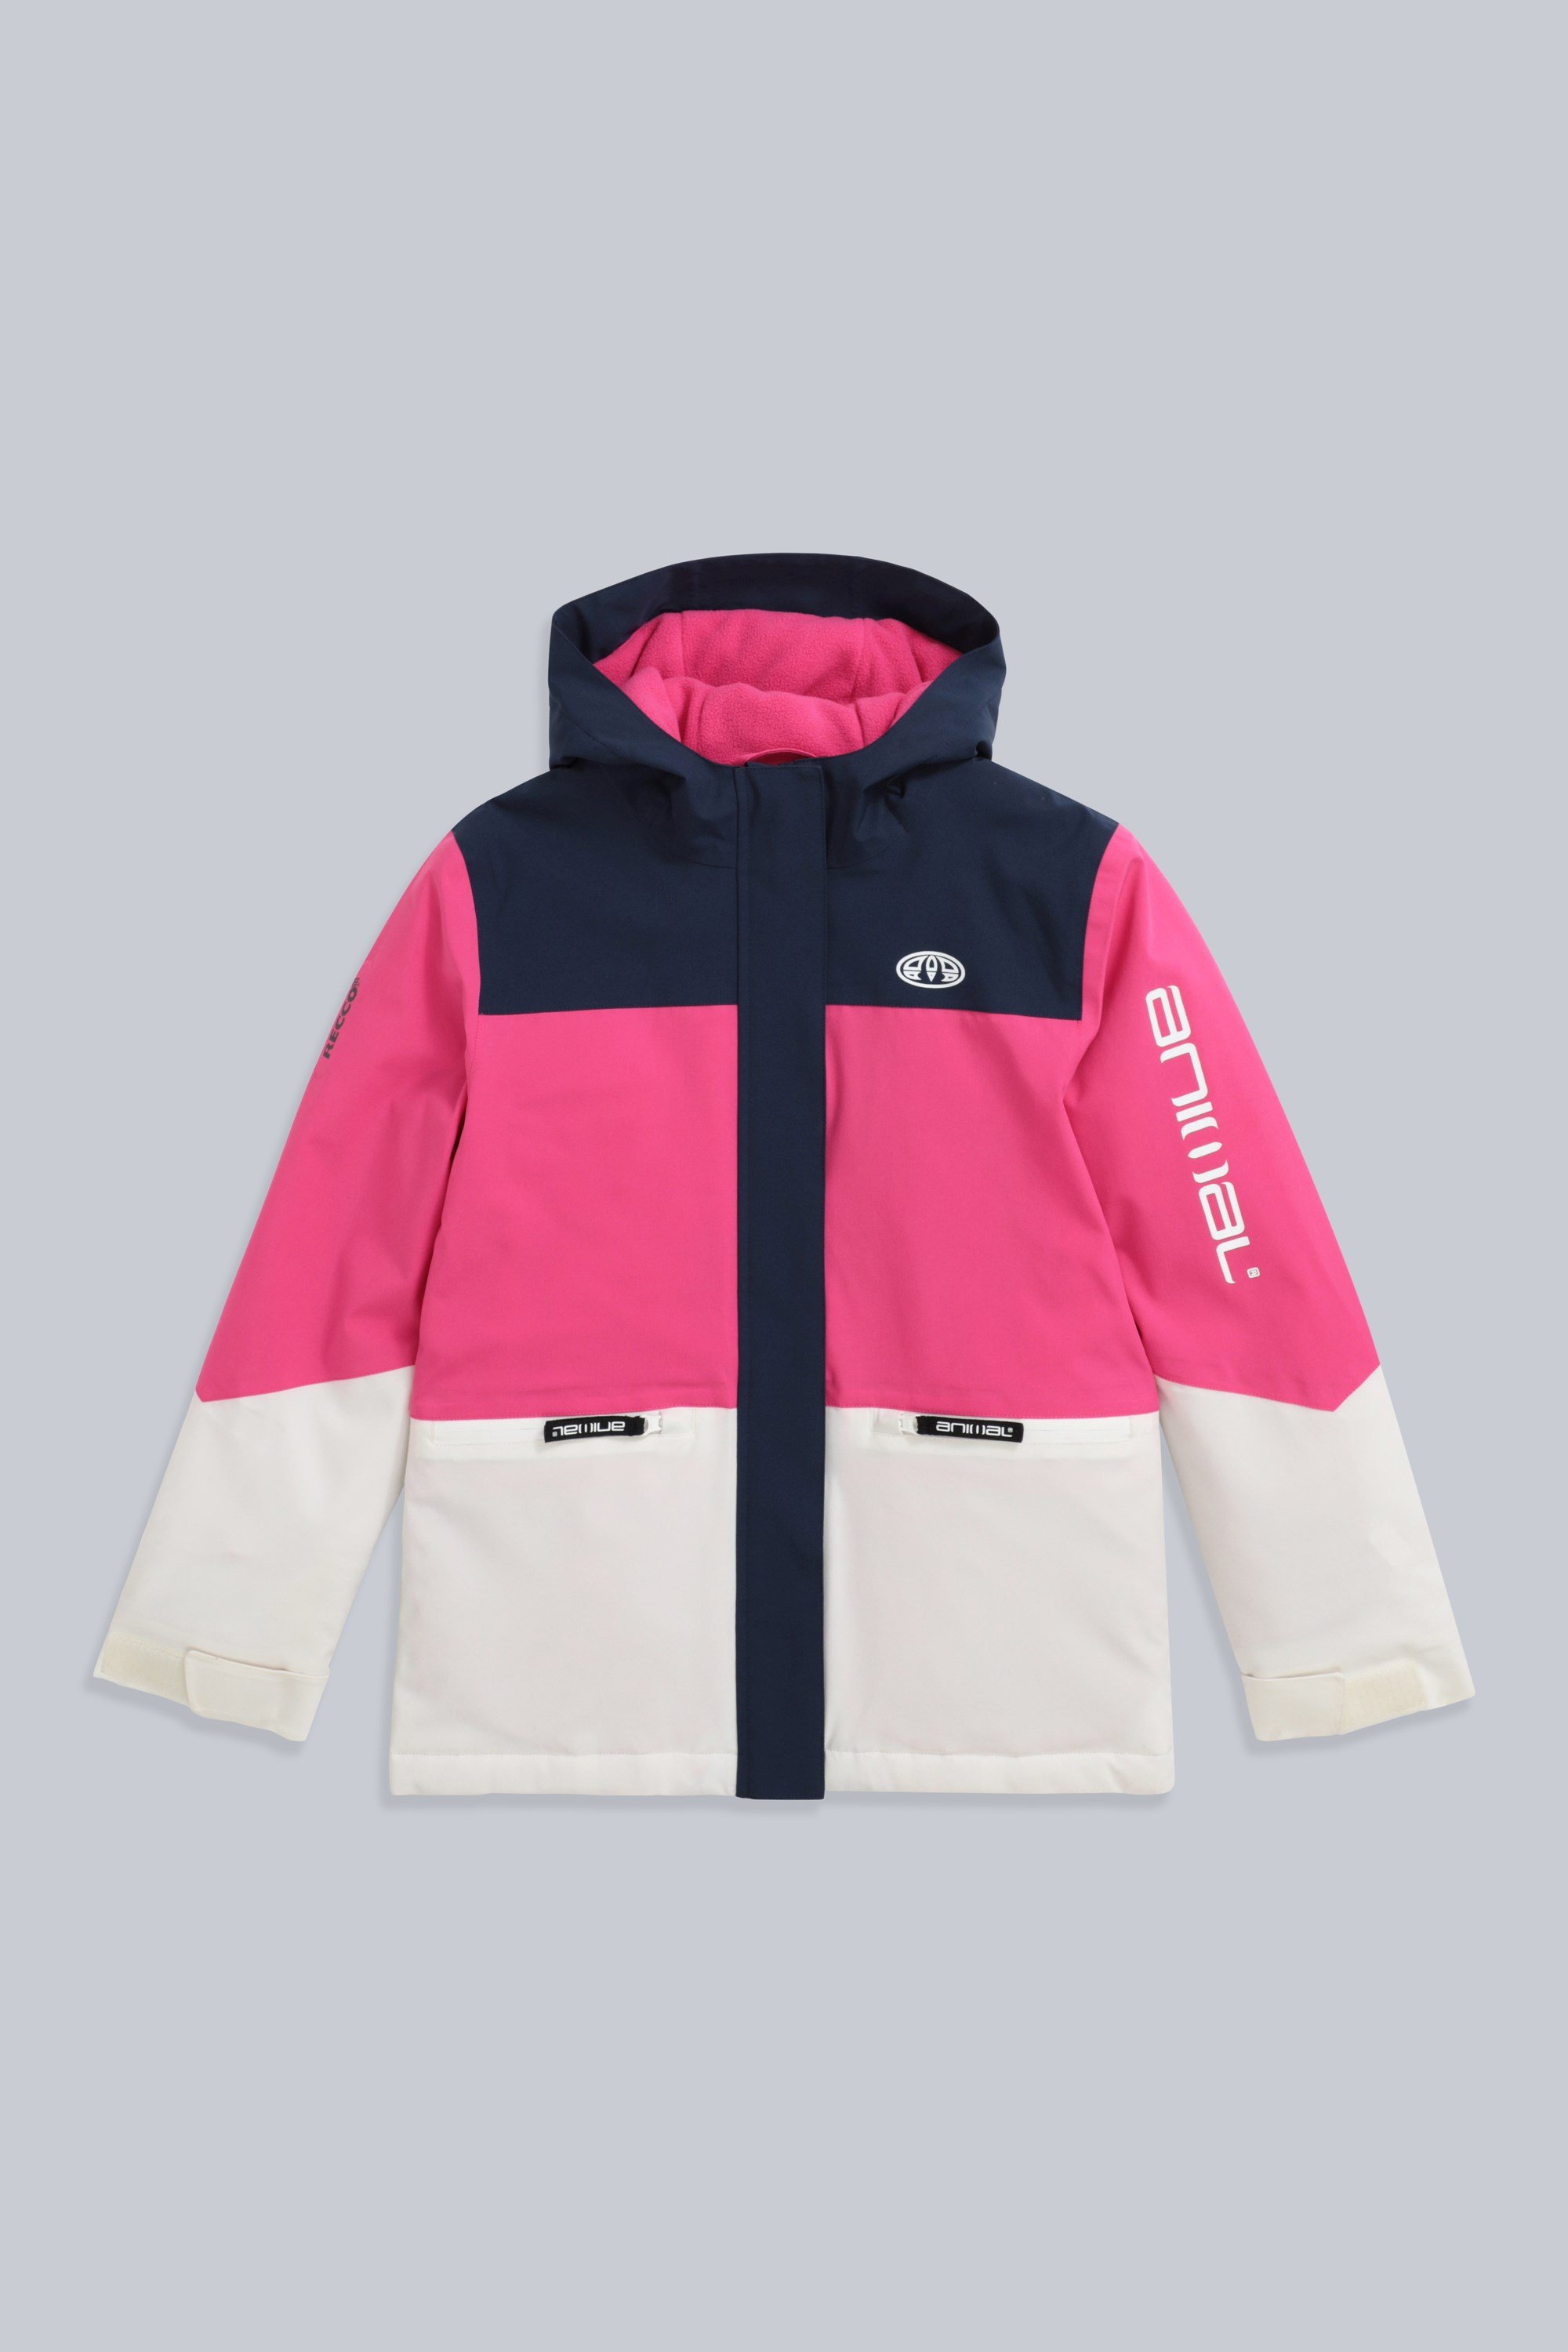 Roam Kids Snow Jacket - Pink